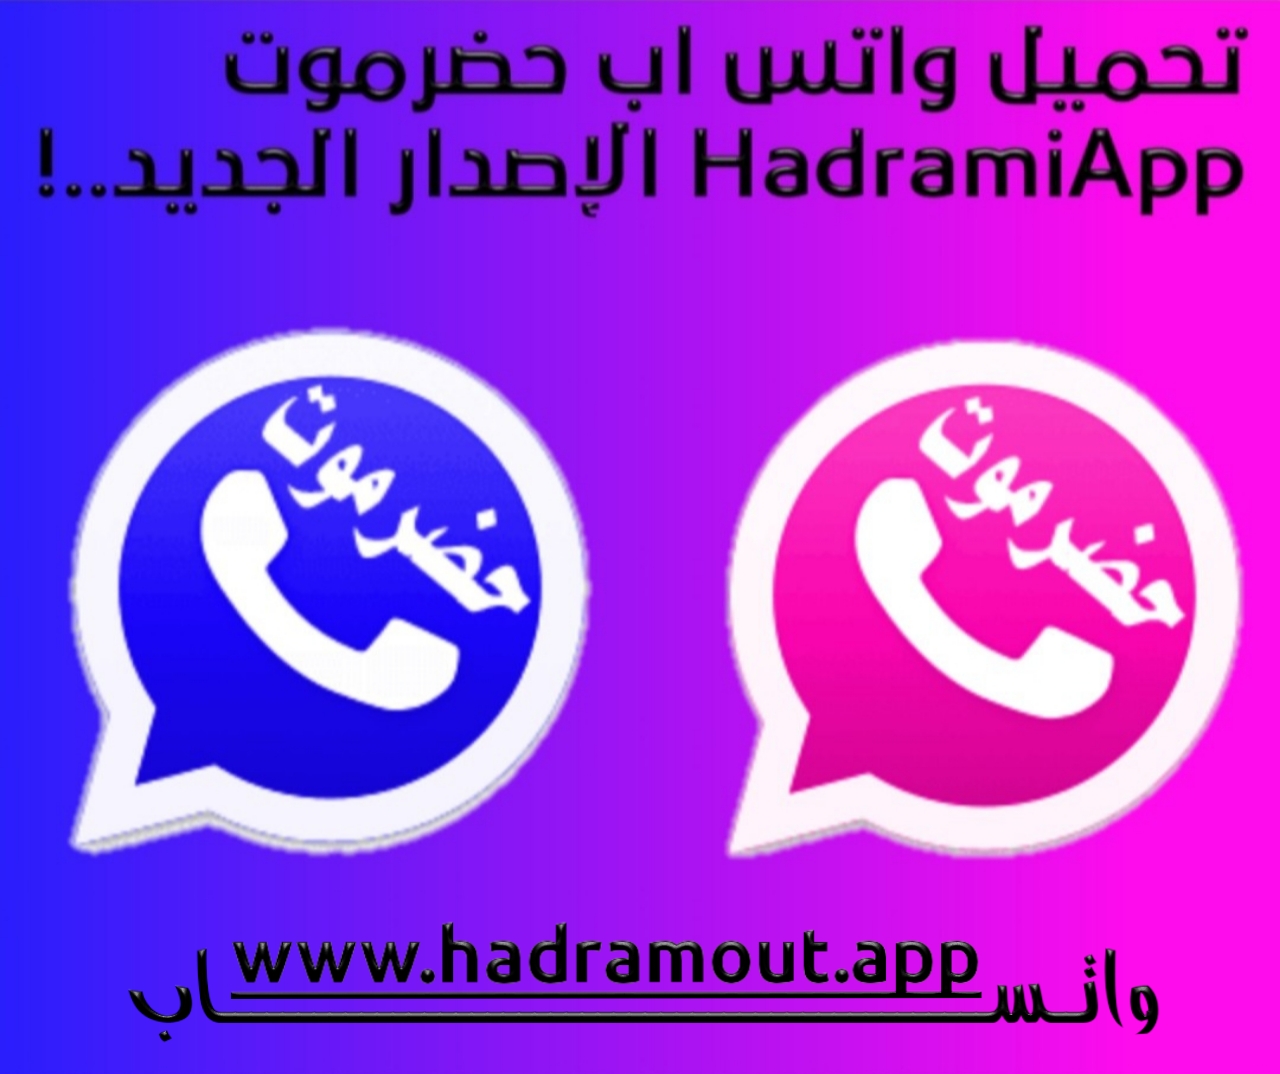 تنزيل واتساب حضرموت الأزرق والوردي الإصدار الجديد HadramiApp برابط مباشر